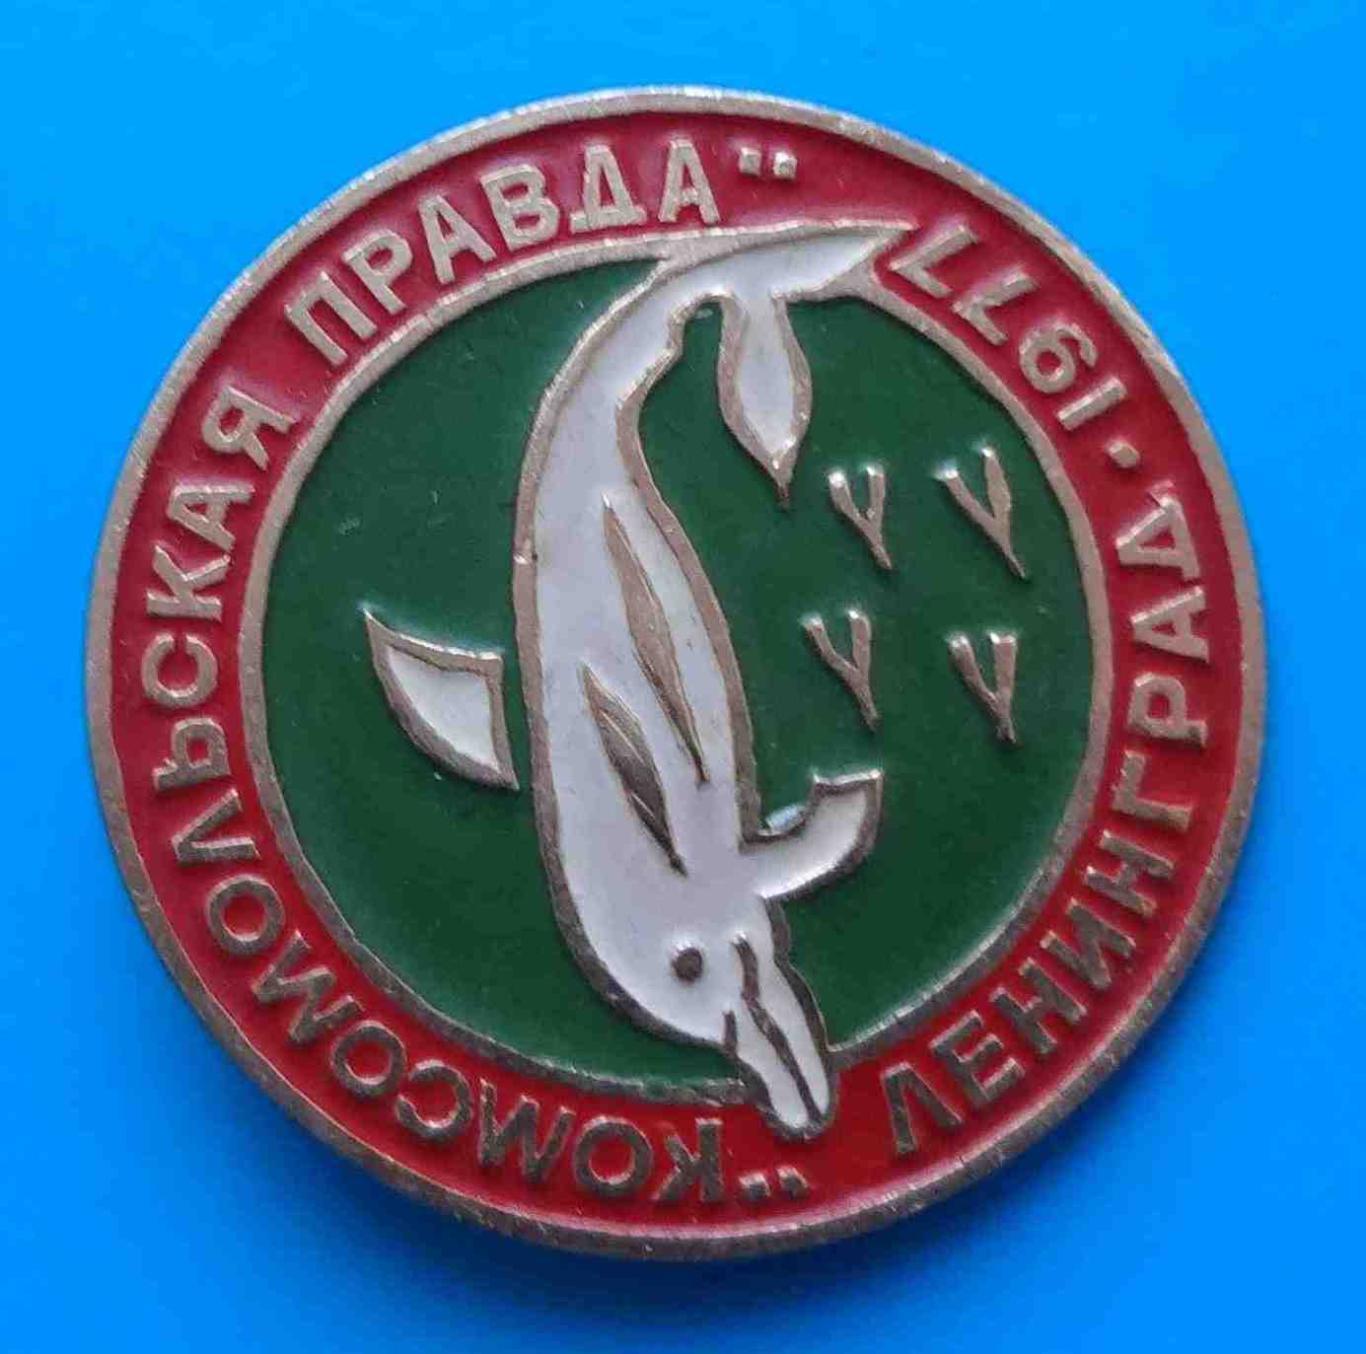 Комсомольская правда Ленинград1977 дельфин ВЛКСМ зеленый 1